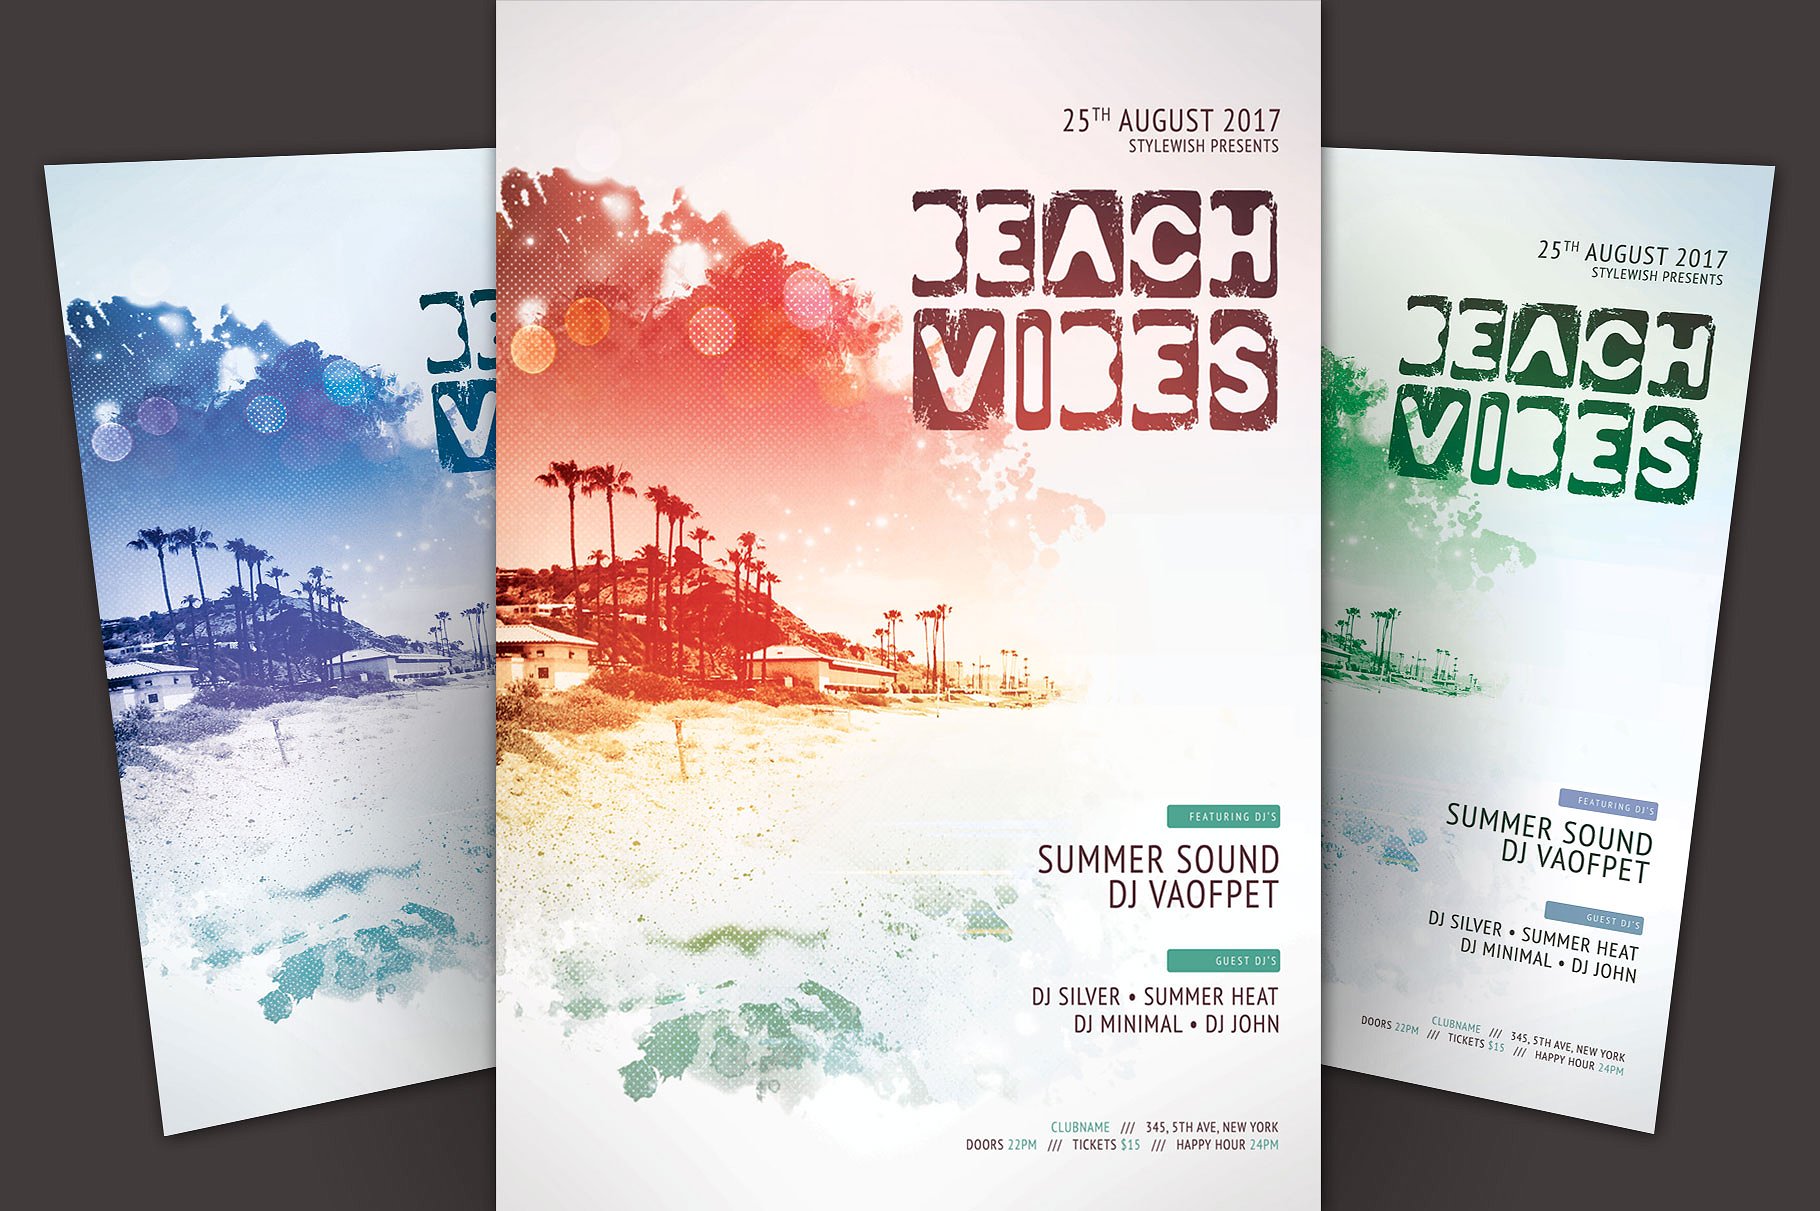 海滩音乐节传单模板 Beach Vibes Flyer Template插图